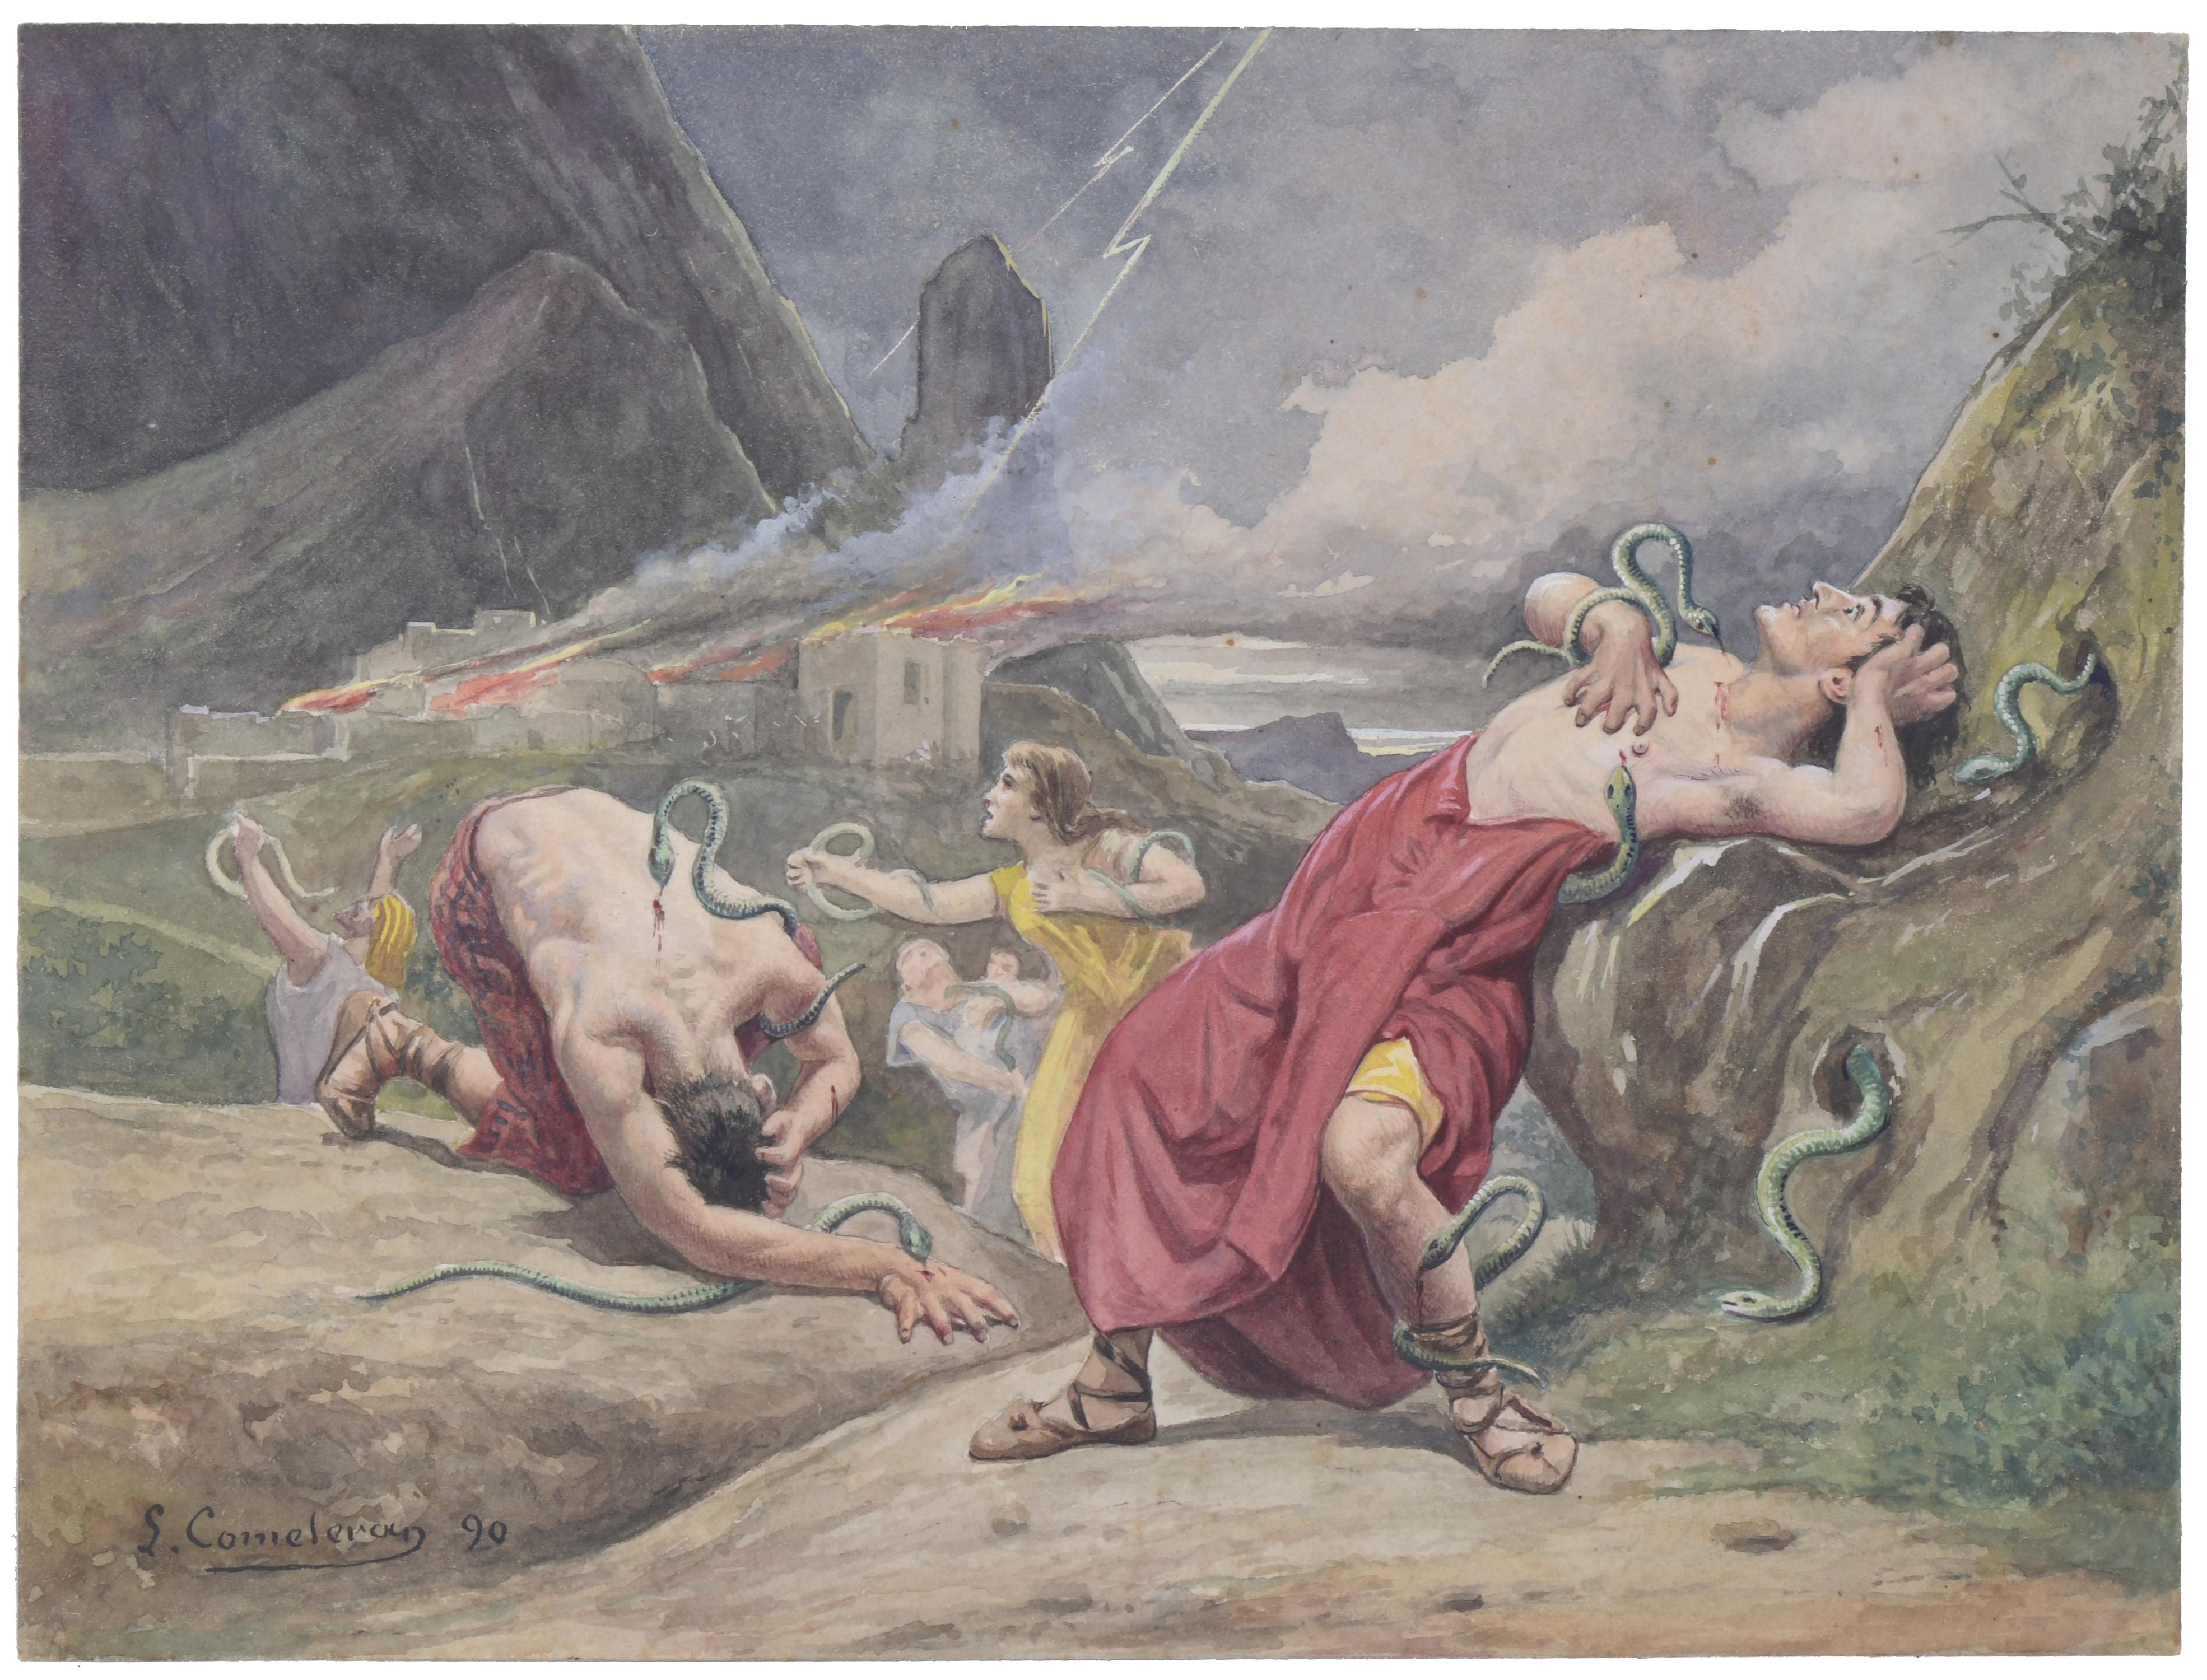 LLEÒ COMELERAN  (1830-?). Ilustración escena bíblica, 1890.